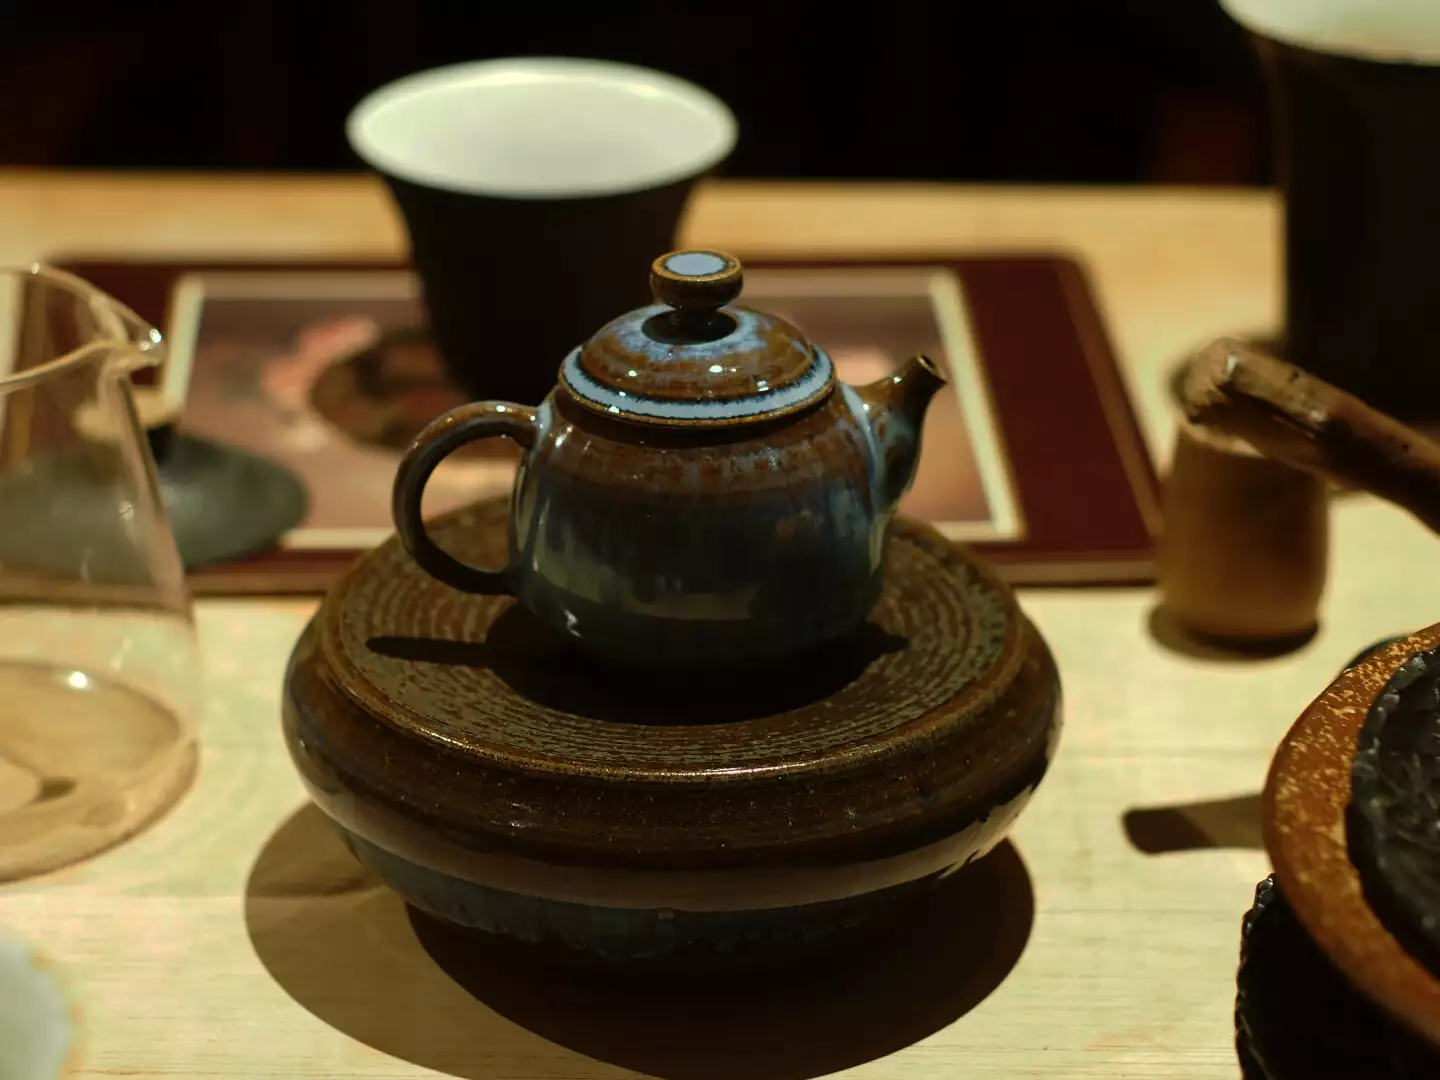 「做茶壺要先懂泡茶，你才會知到這把茶壺需要什麼。」阿哲謹記師傅說的話，相信茶壺是學陶的根。